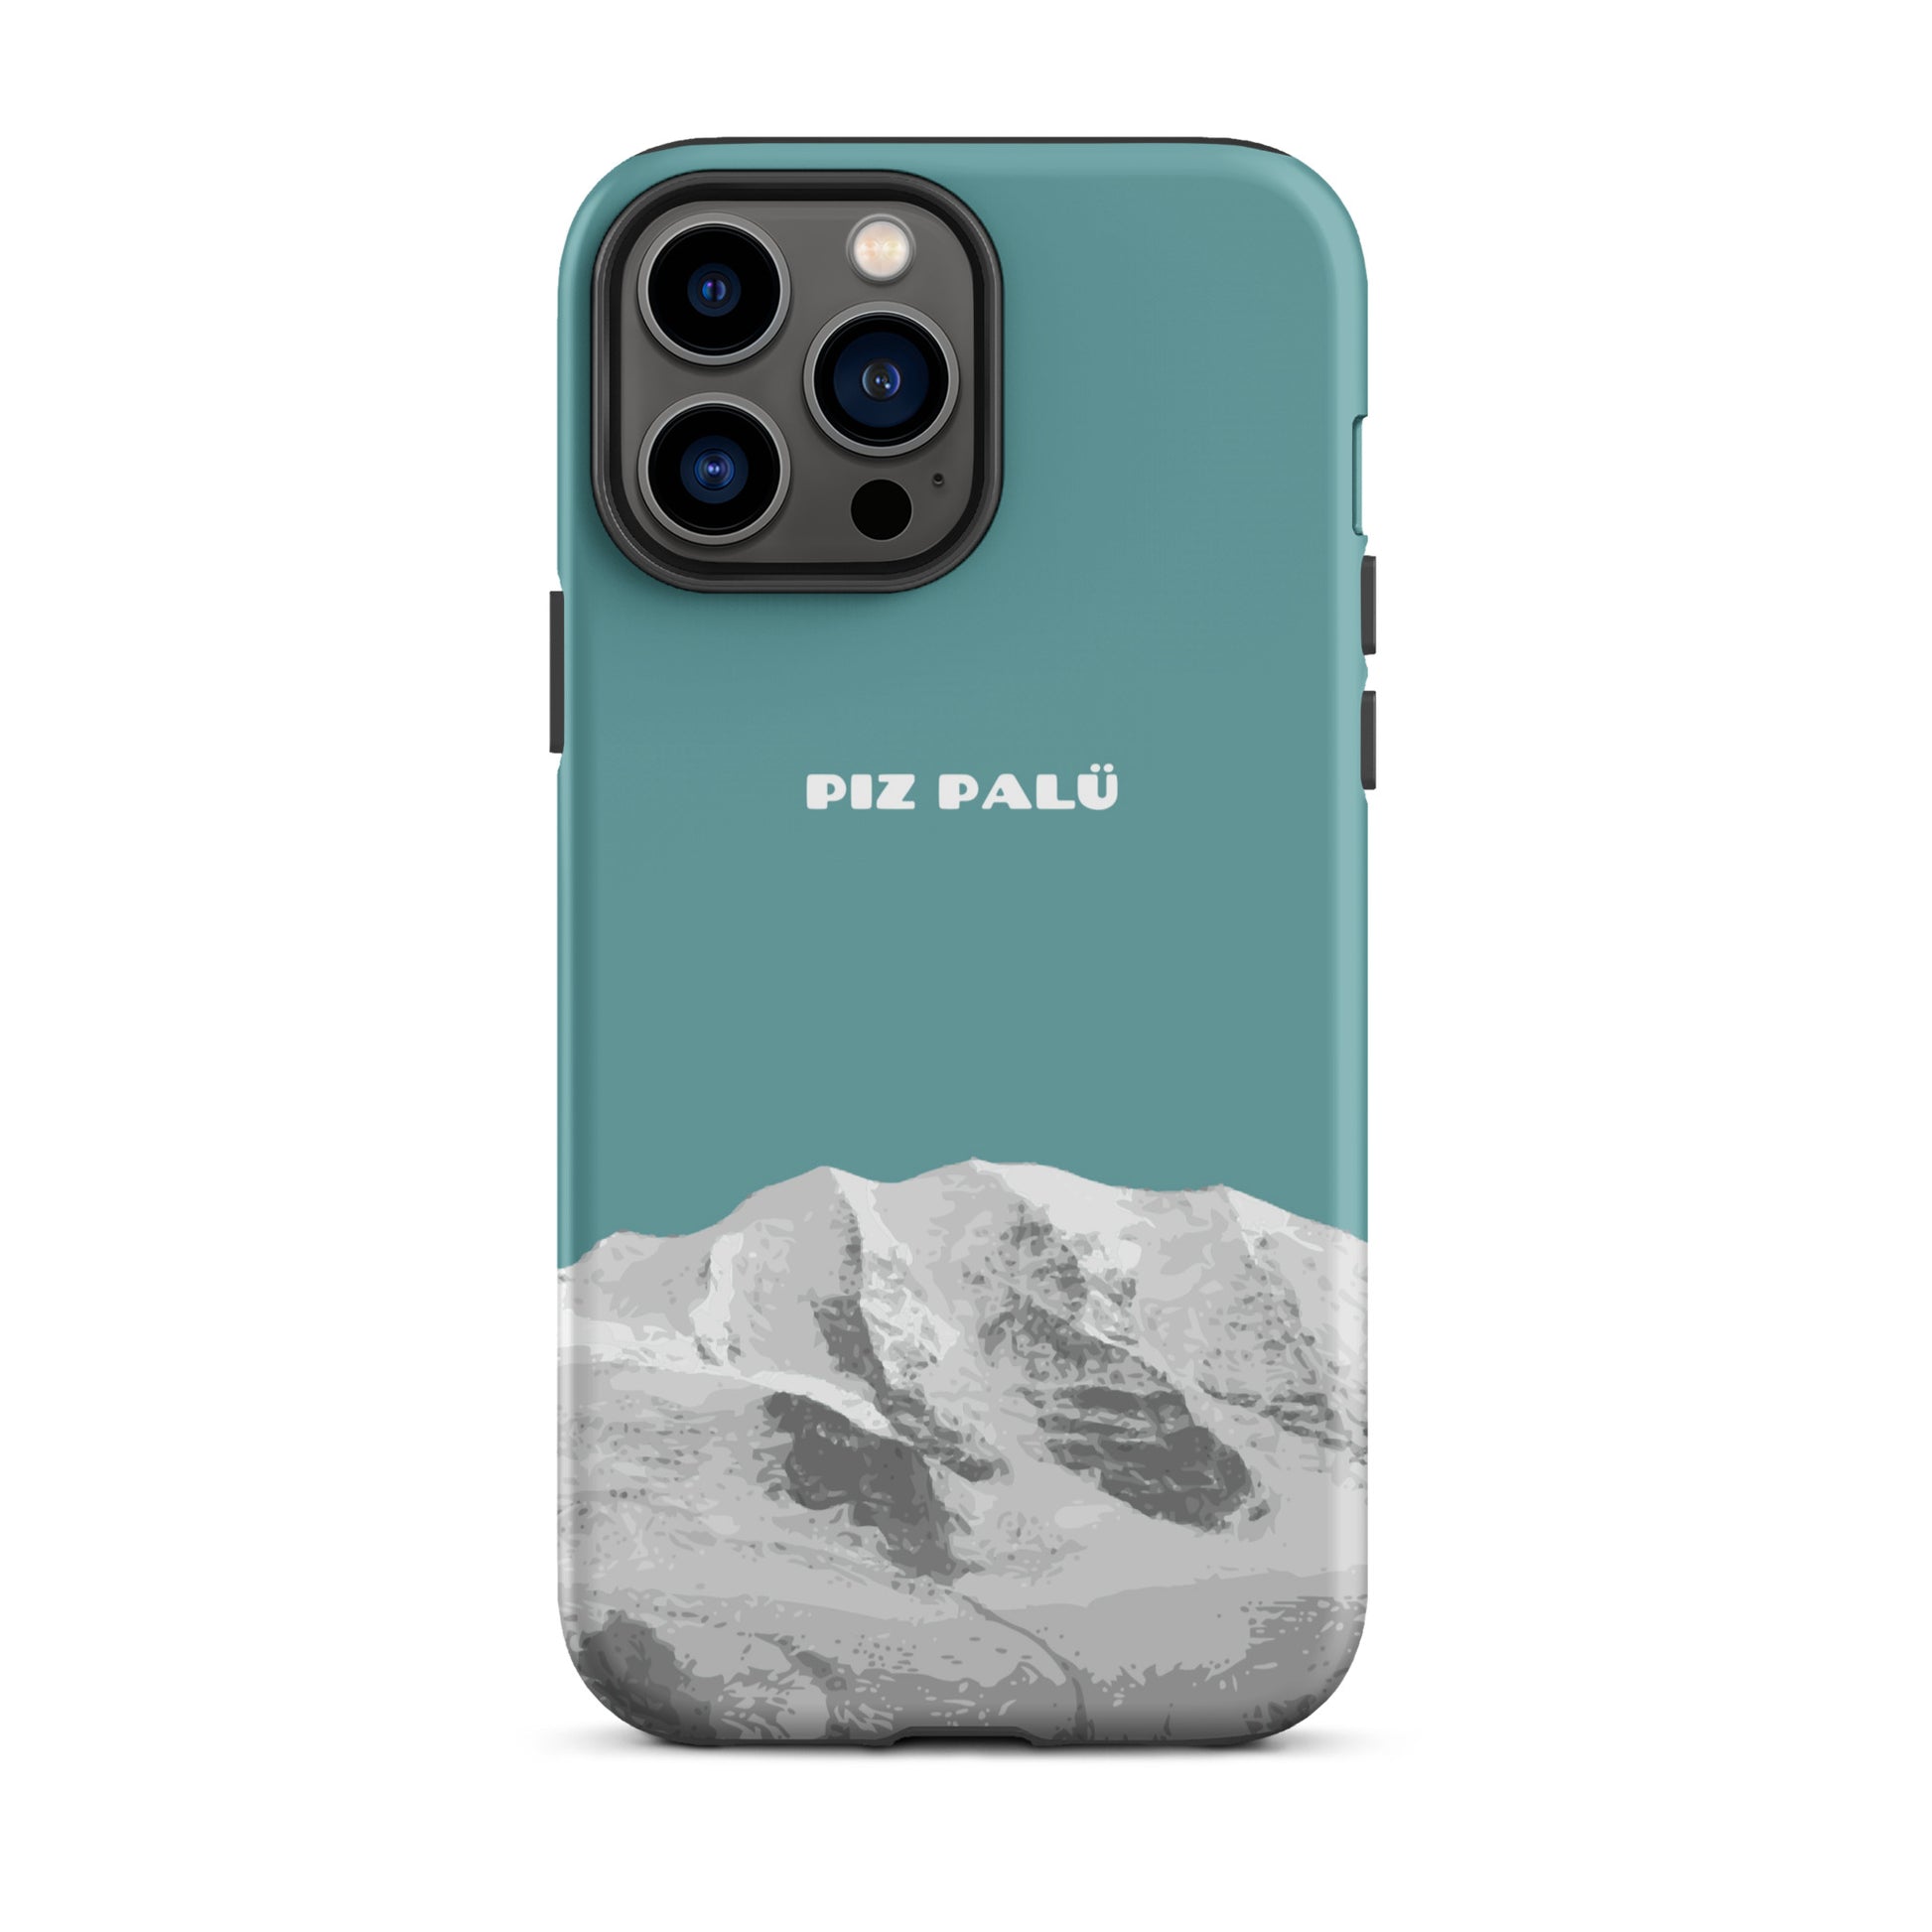 Hülle für das iPhone 13 Pro Max von Apple in der Farbe Kadettenblau, dass den Piz Palü in Graubünden zeigt.